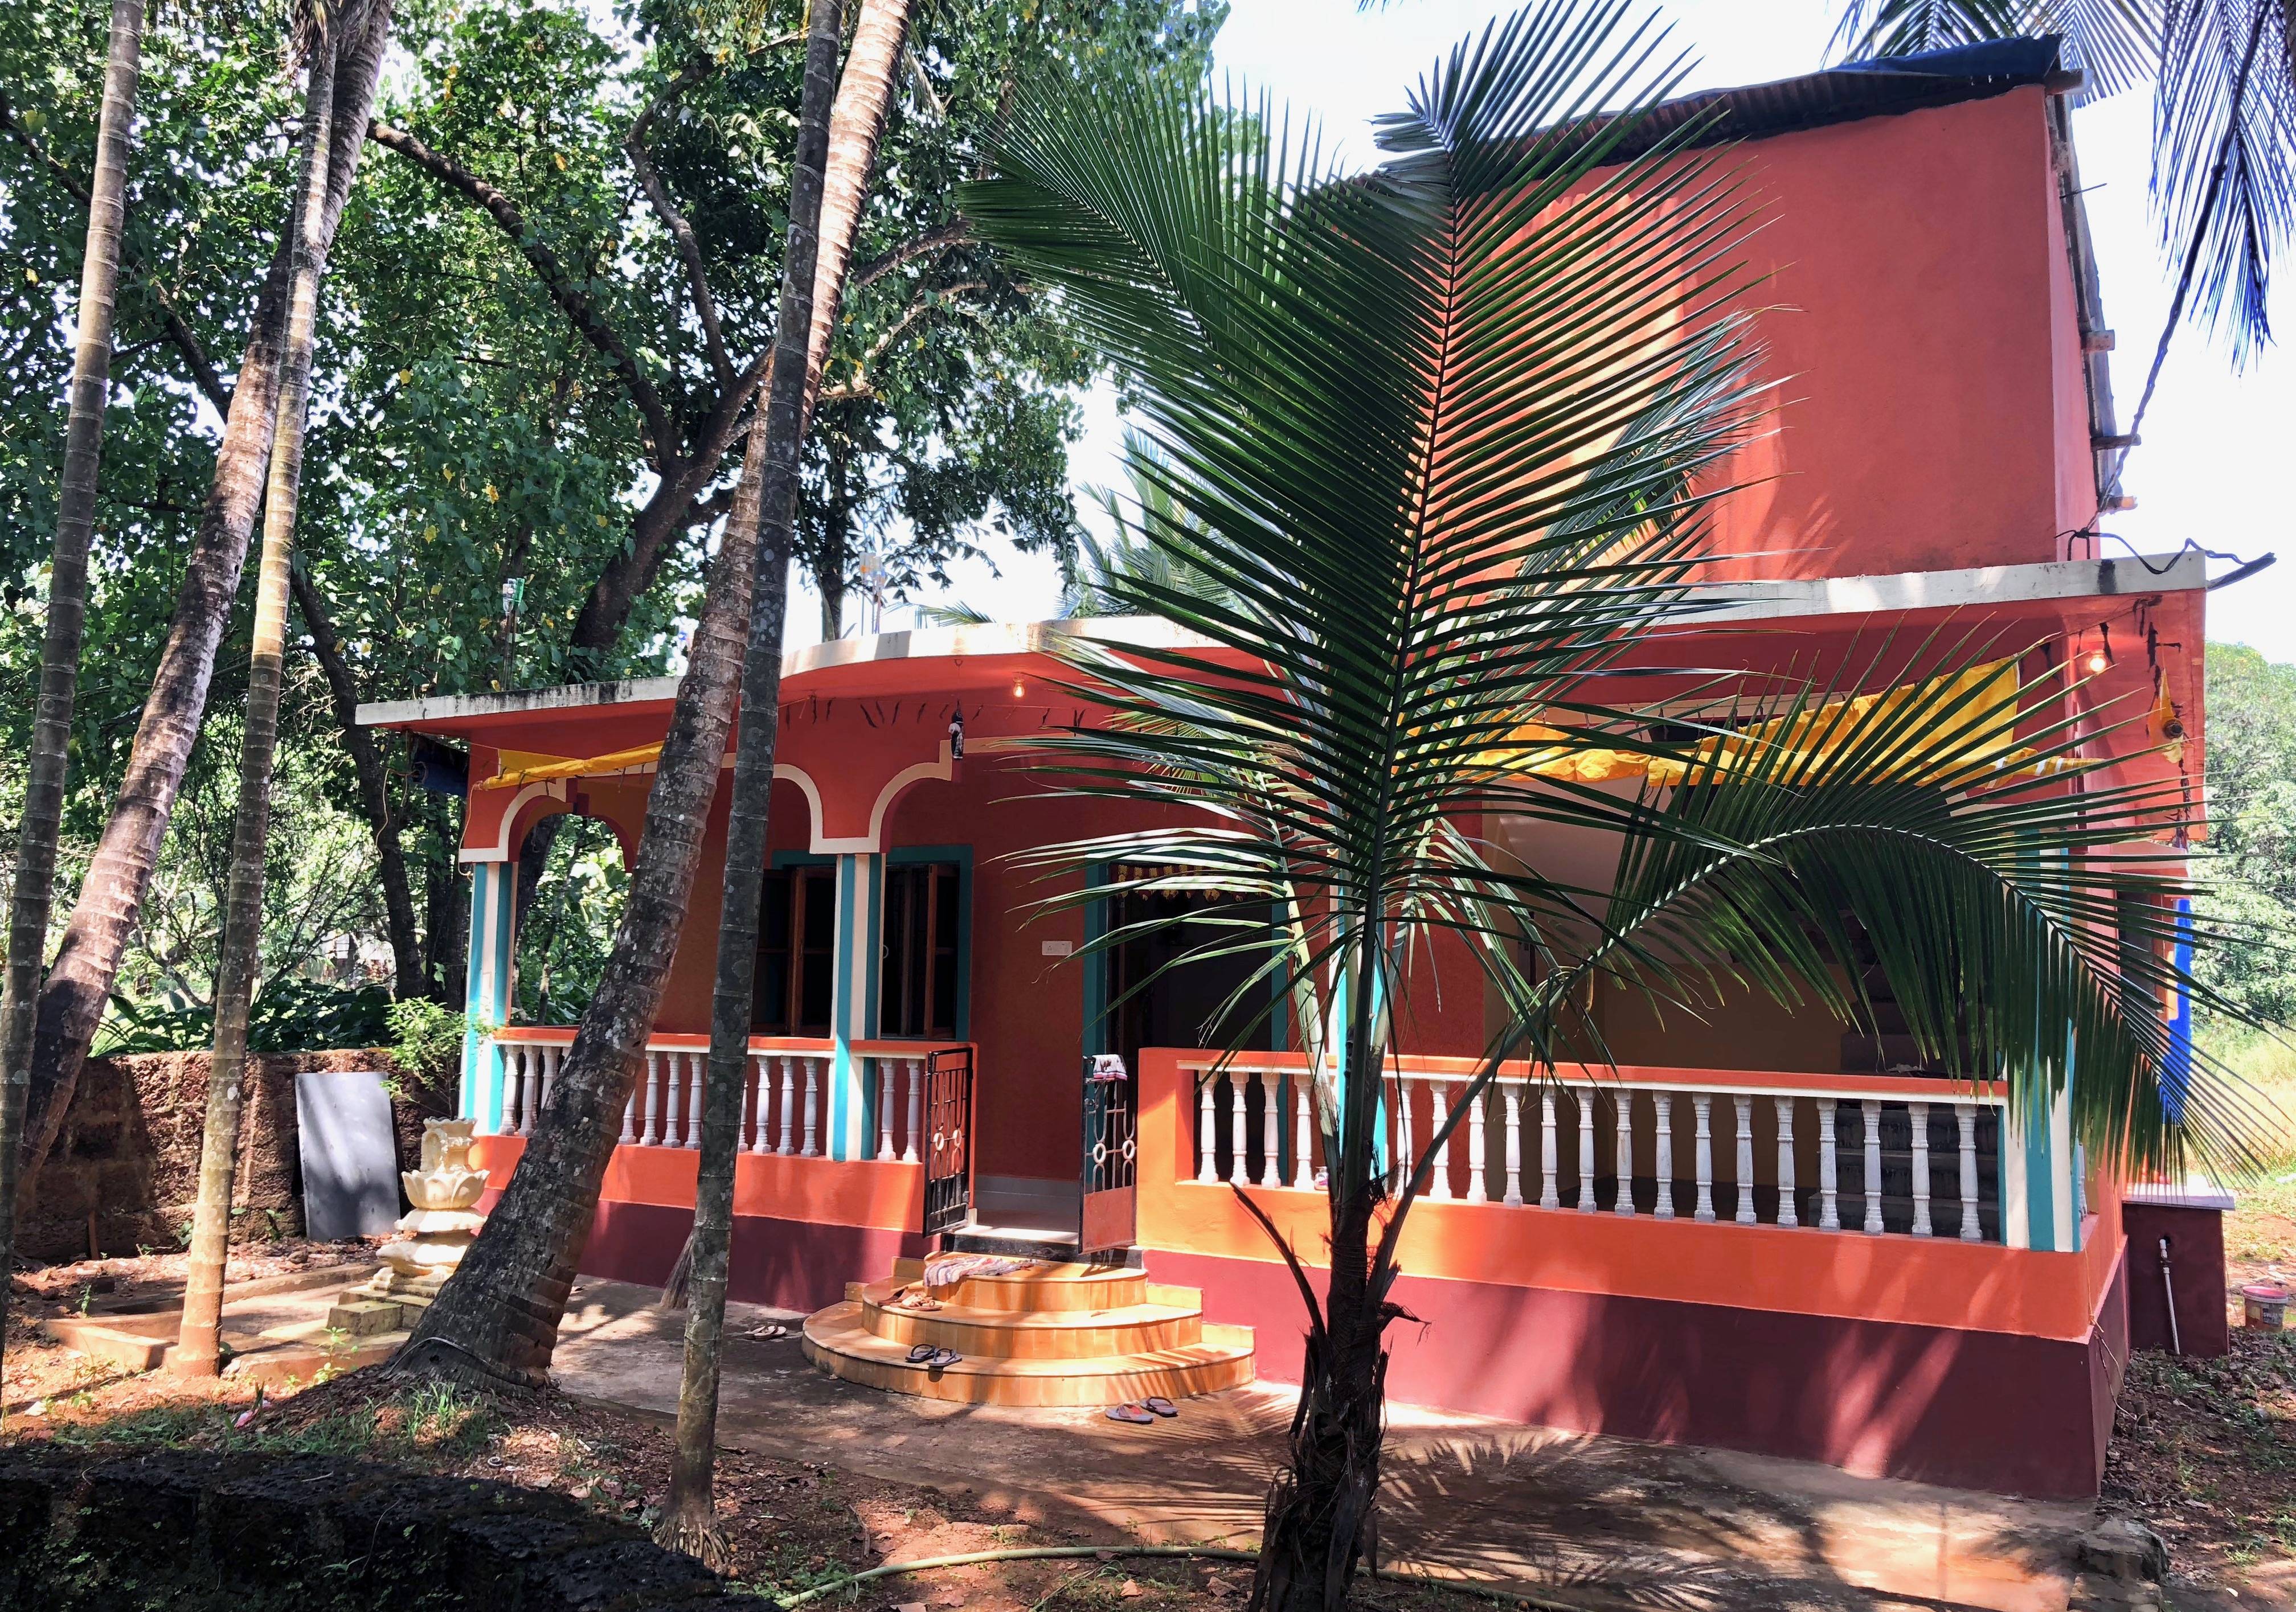 Сколько стоит аренда квартиры или дома в индии - туристический блог ласус